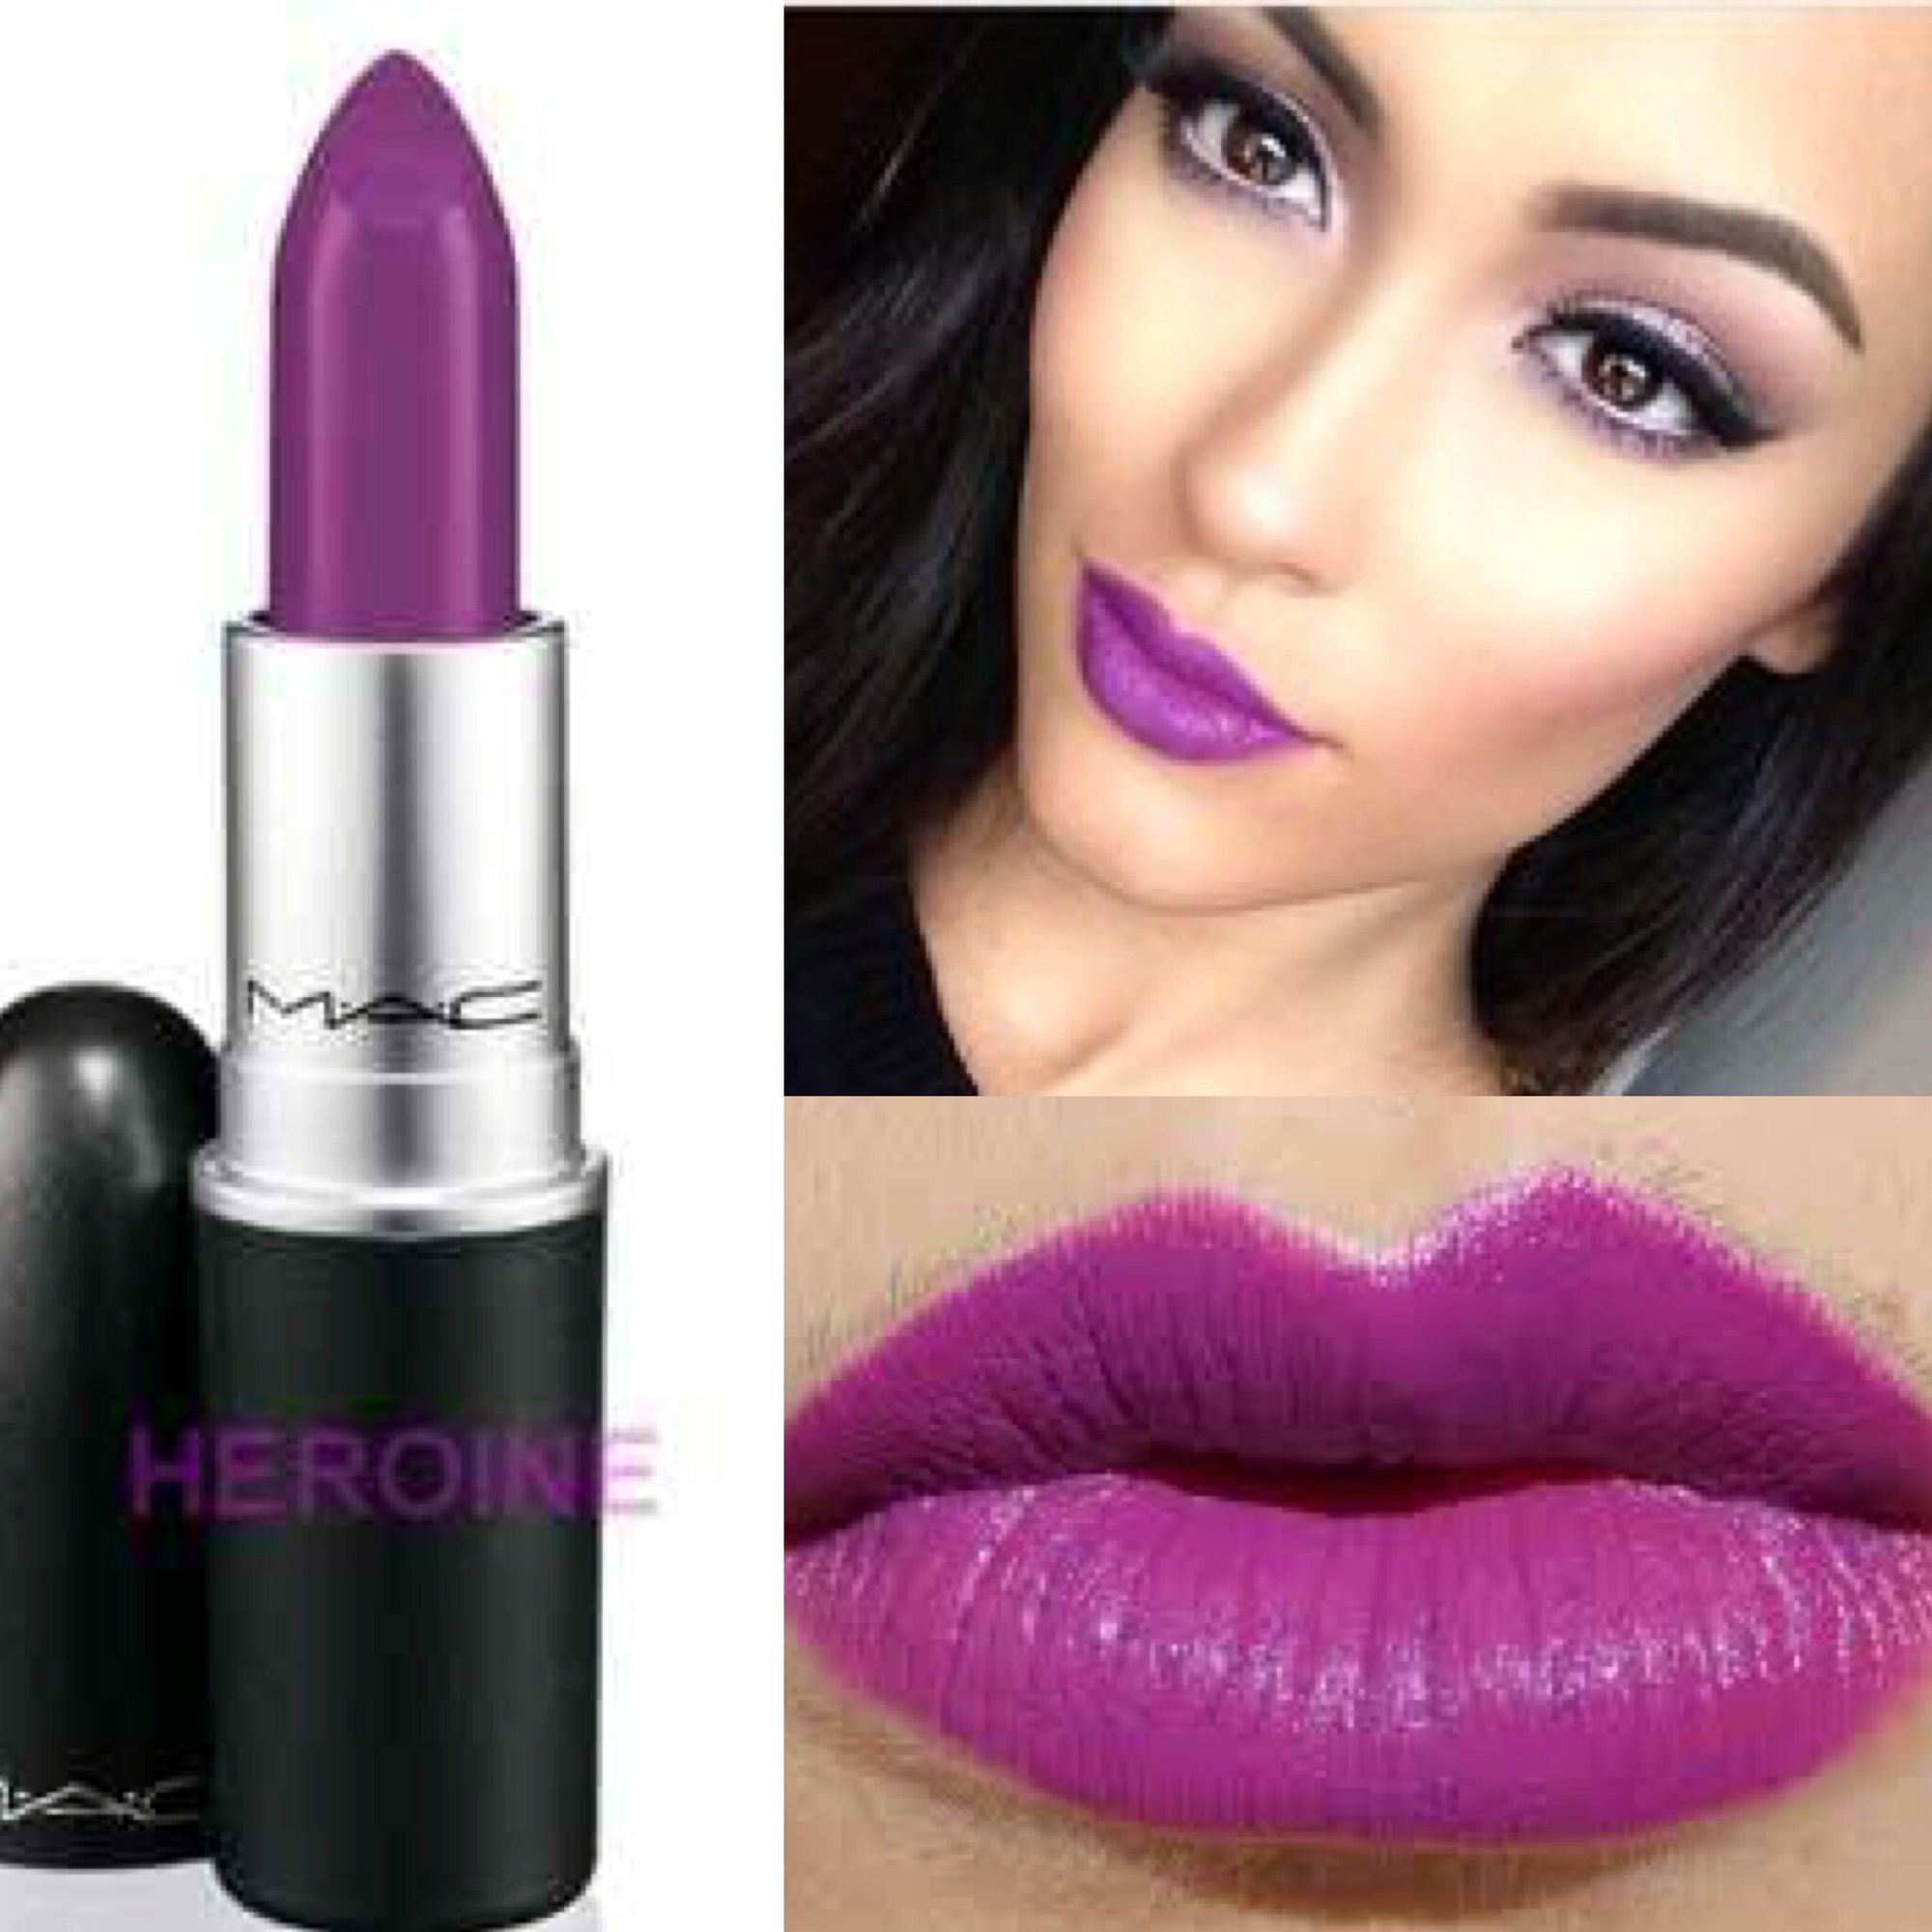 Heroine - MAC | Makeup! | Pinterest | Macs, Makeup and Lips